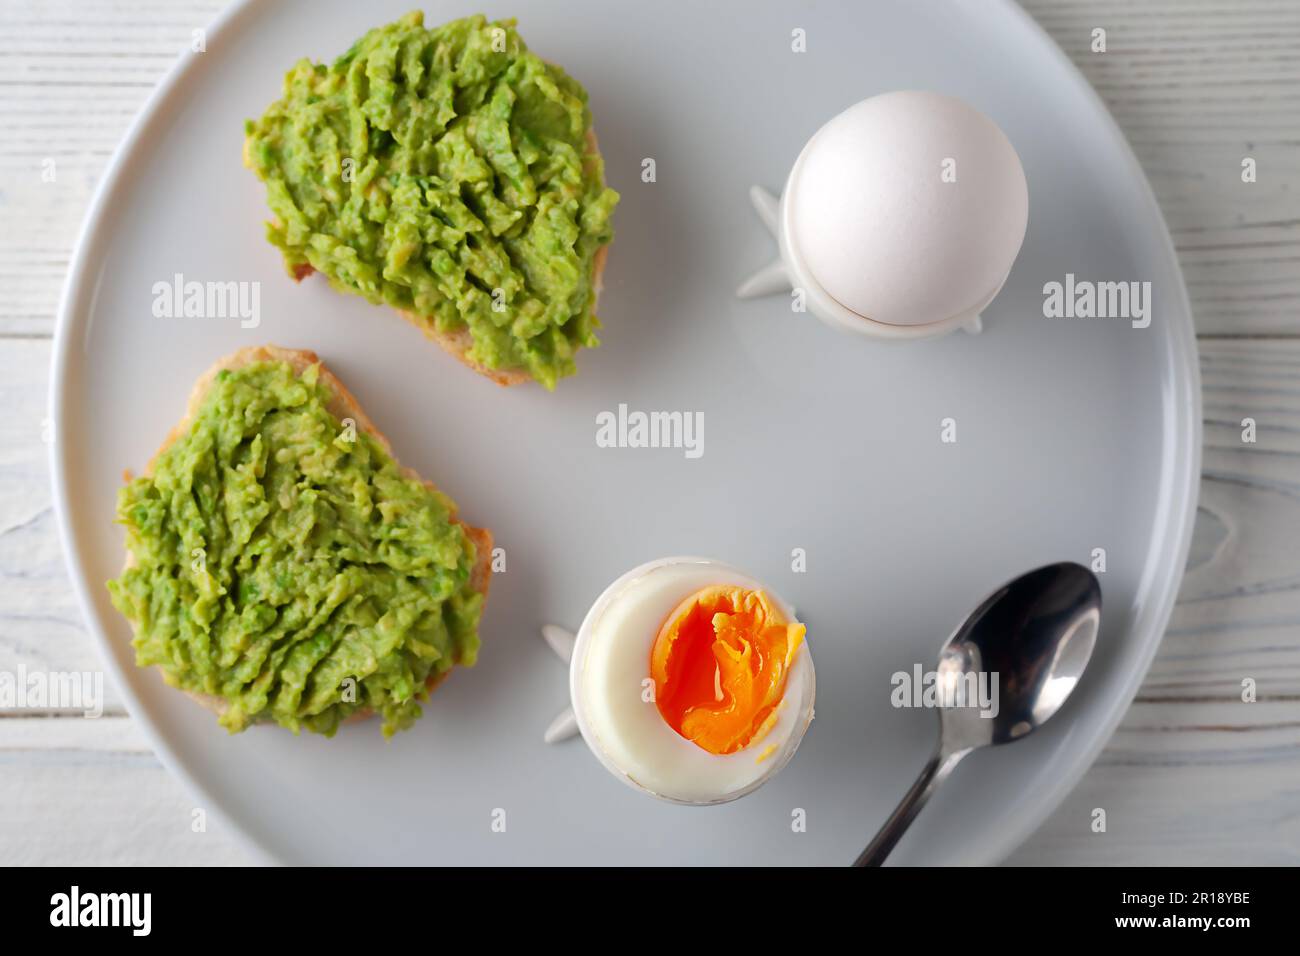 Europäisches Frühstück. Weich gekochtes Ei und offenes Brot-Sandwich mit Avocado auf dem Tisch. Traditionelles Essen für ein gesundes Frühstück. Stockfoto